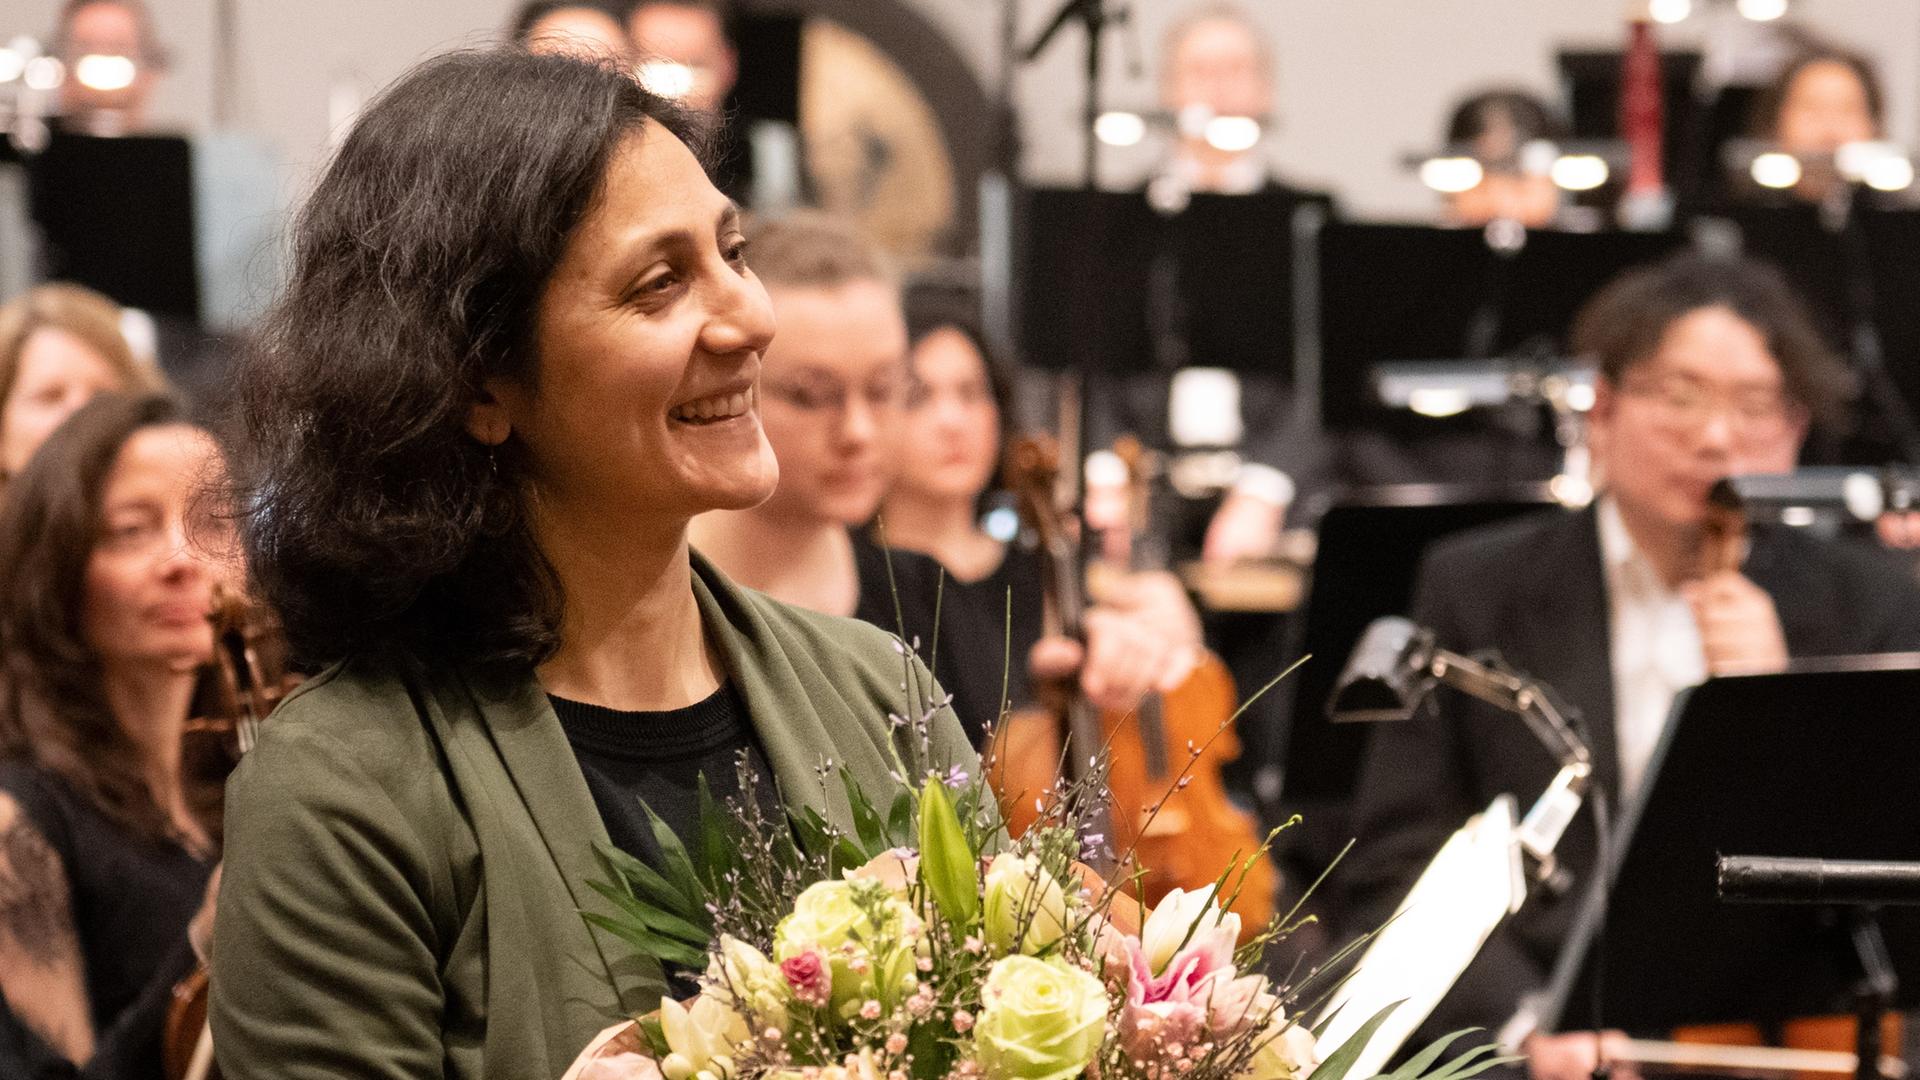 Farzia Fallah nimmt Beifall und Blumenstrauß nach der Uraufführung vor dem Orchester stehend entgegen. 